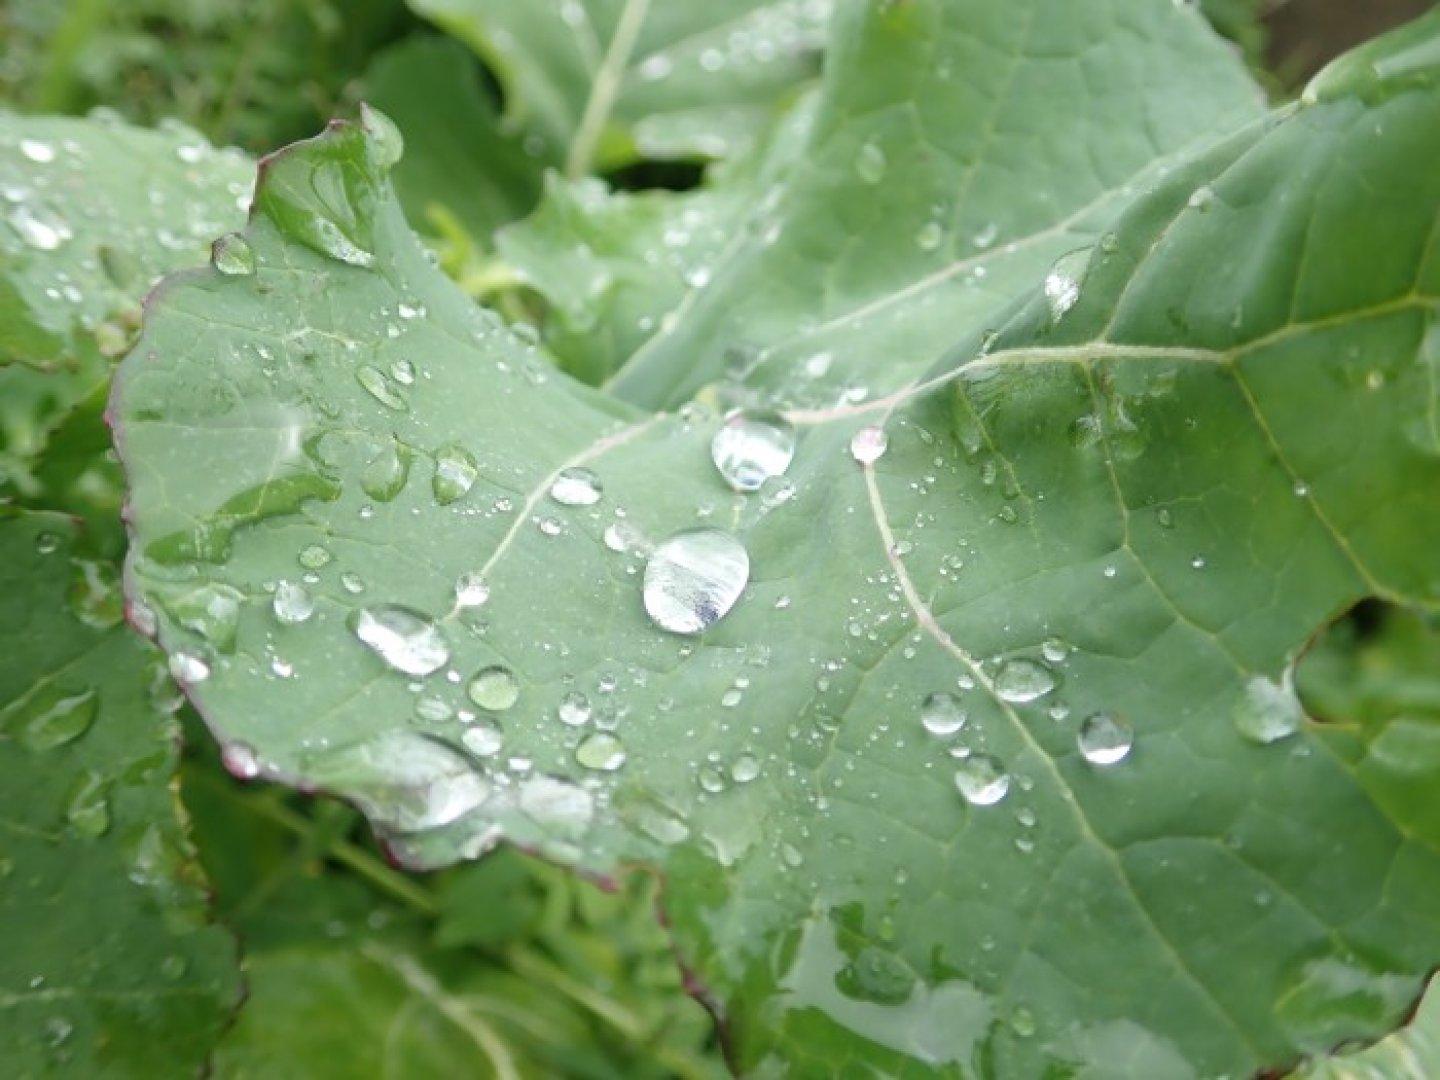 Rain Drops on Green Norabouna Leaf